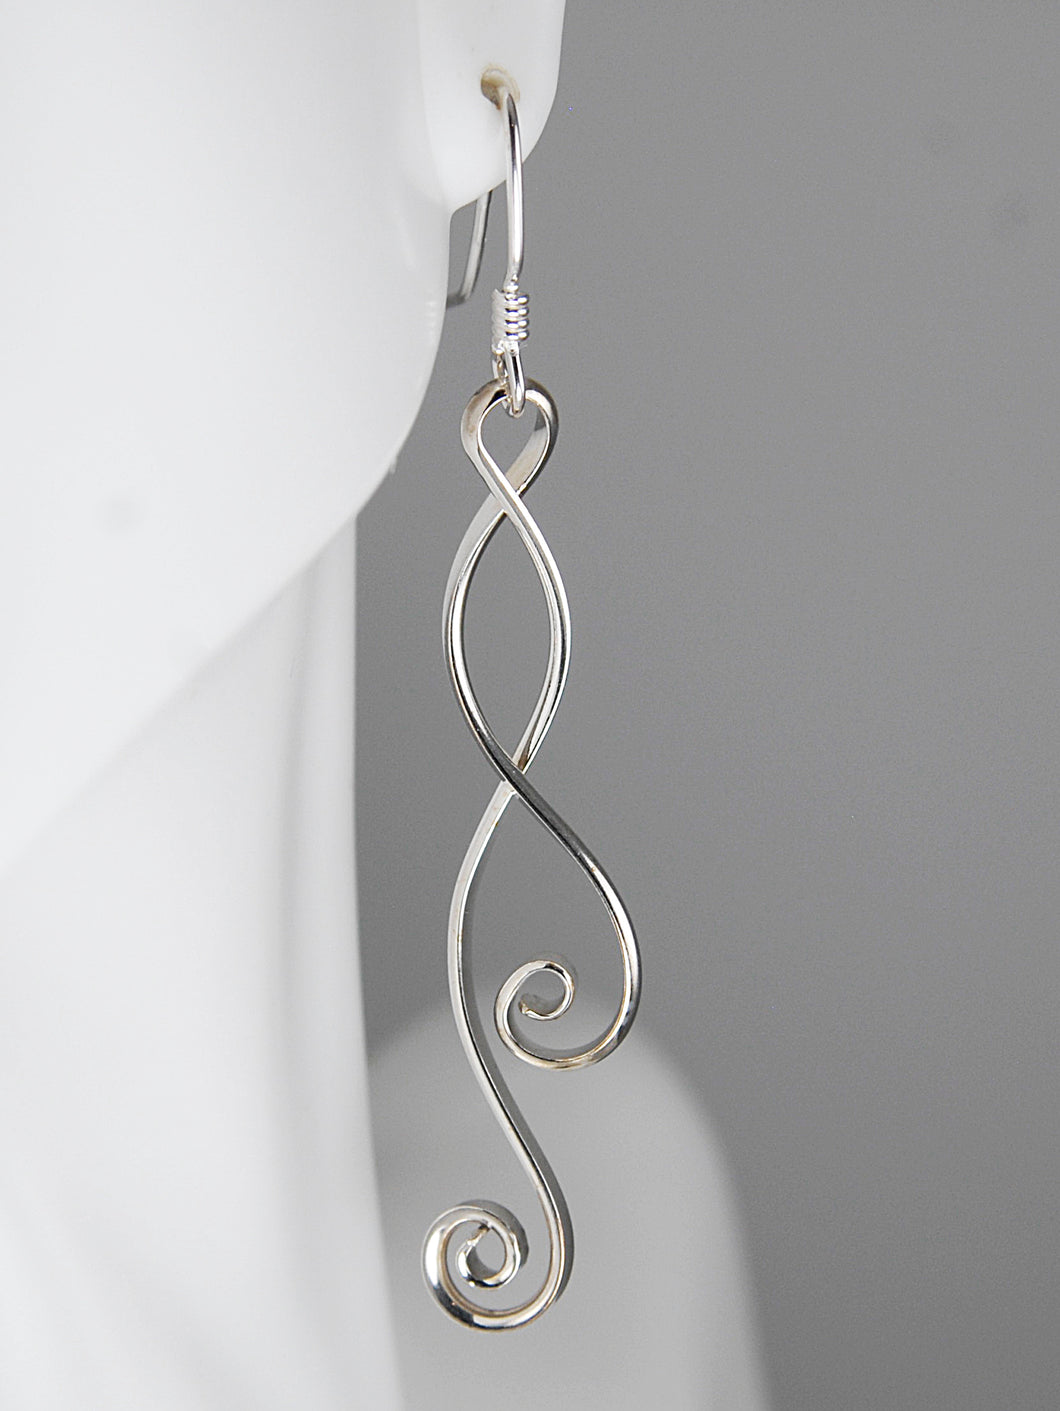 Long Silver Double Spiral Earrings, SE4, Lois Linn Jewelry